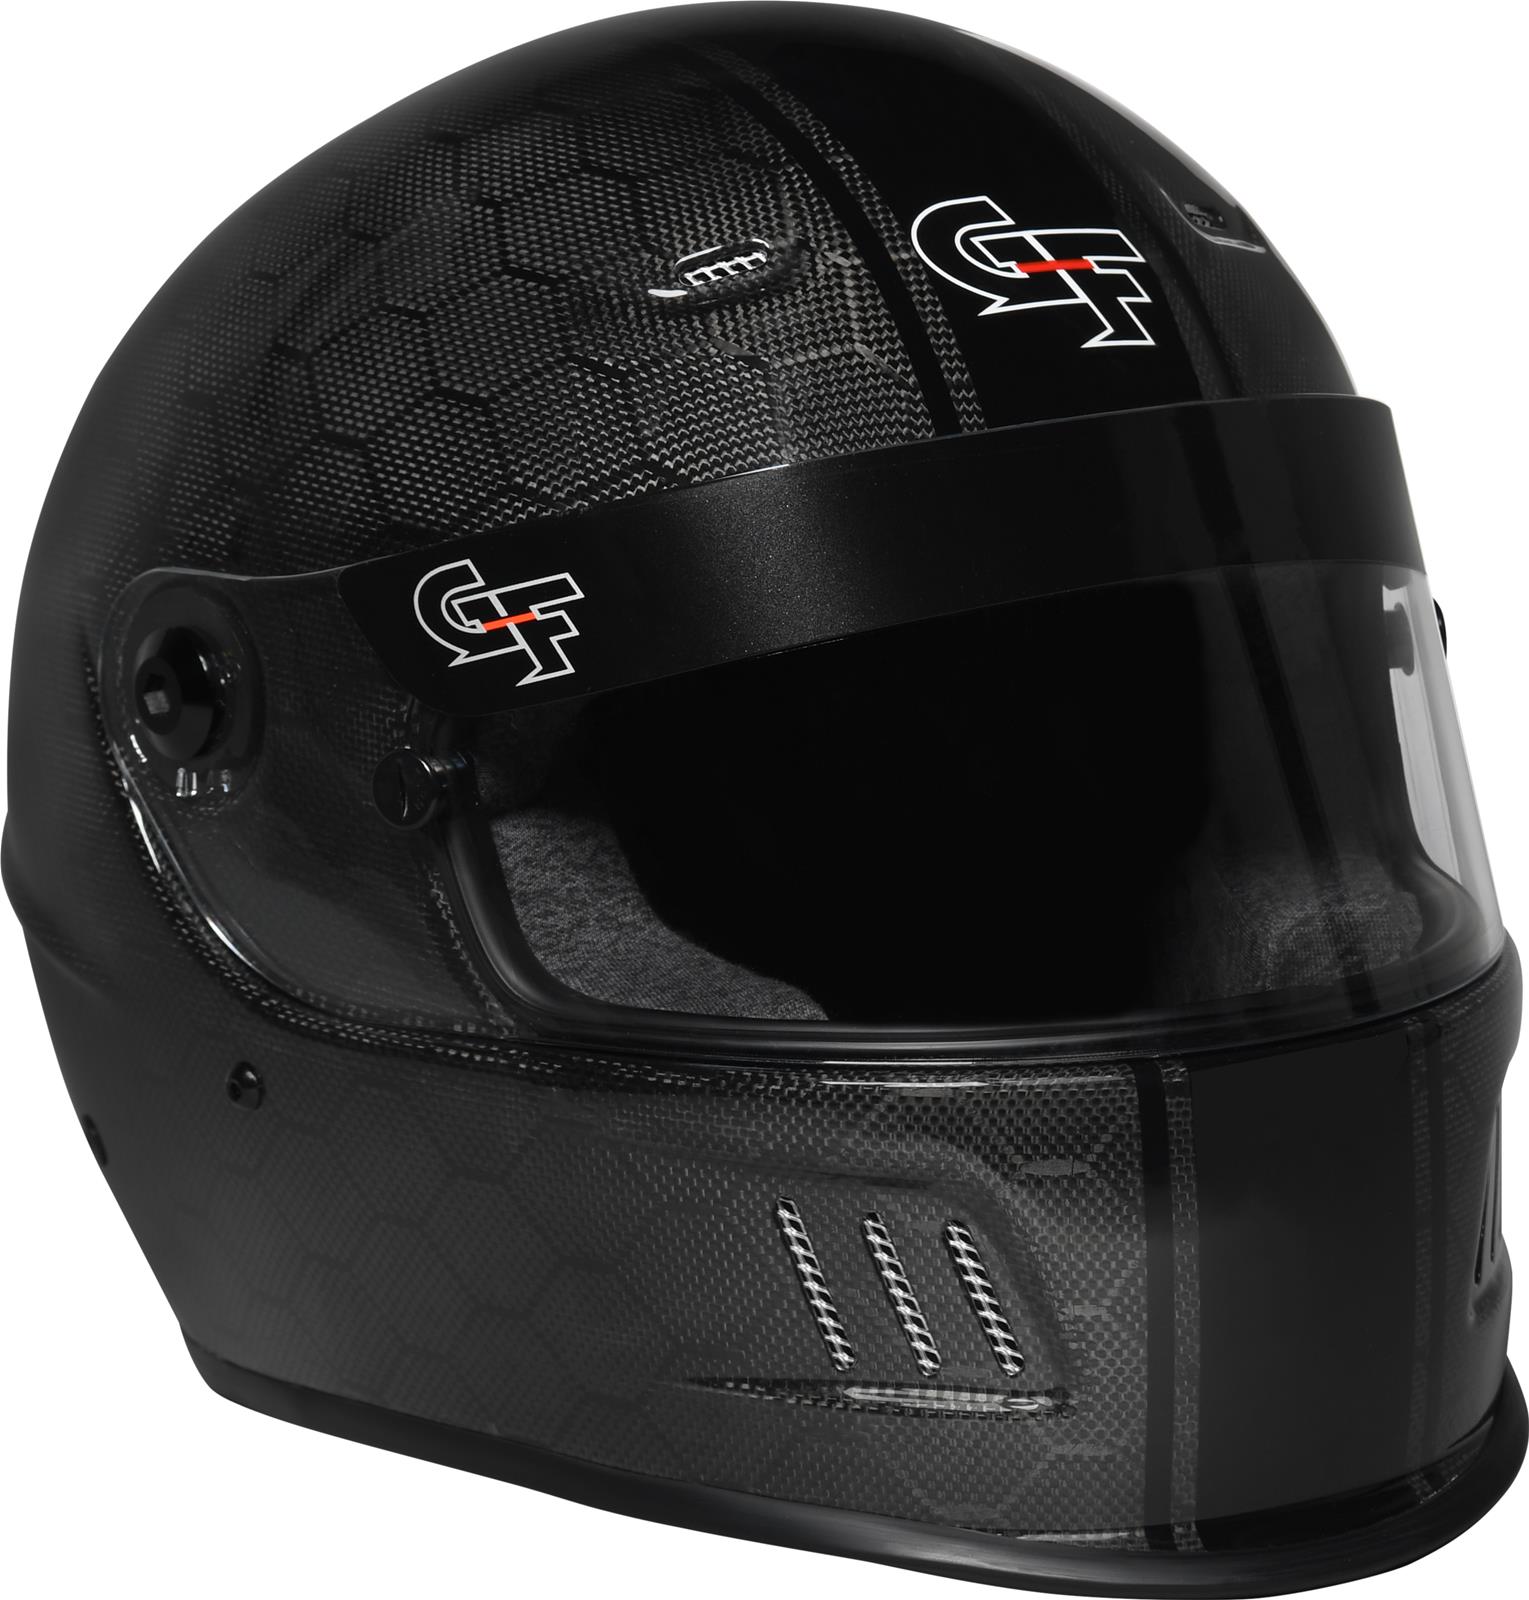 g force racing helmet